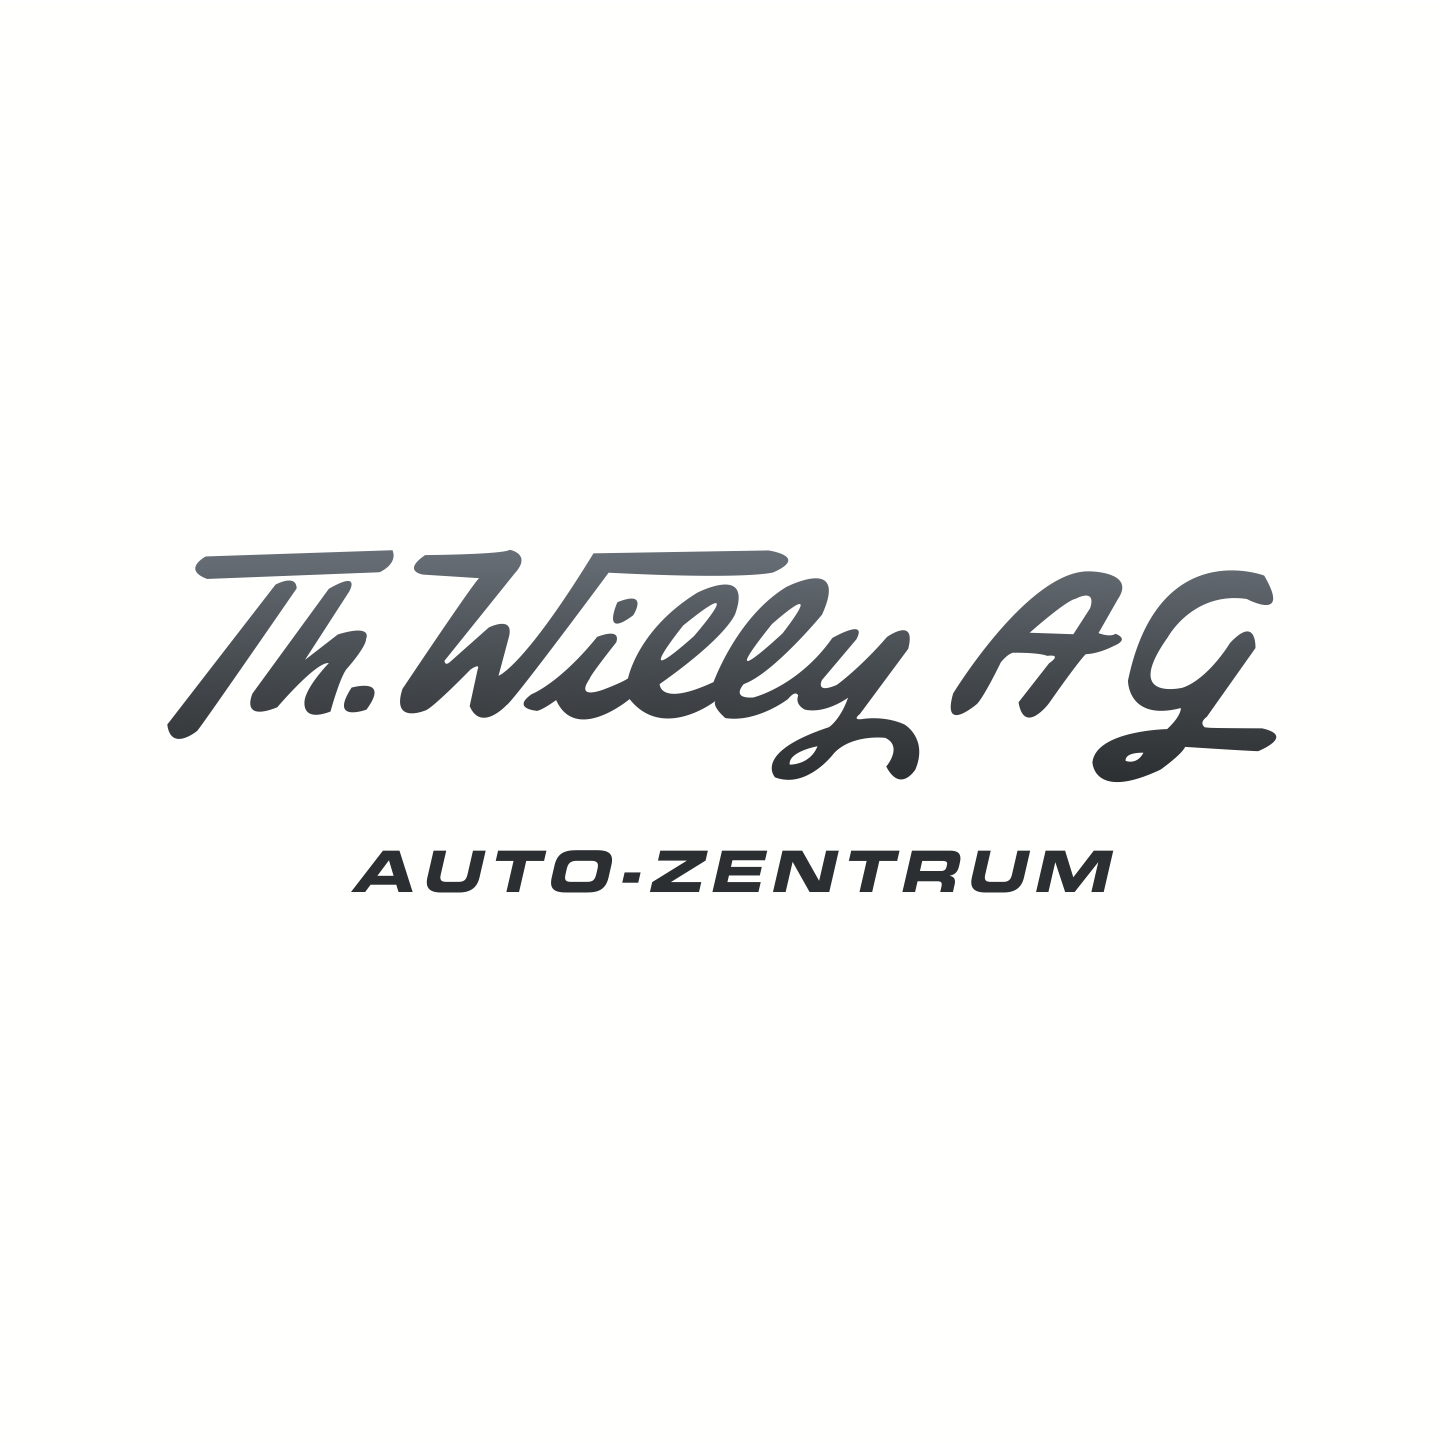 Th. Willy AG Auto Zentrum (Zürich)